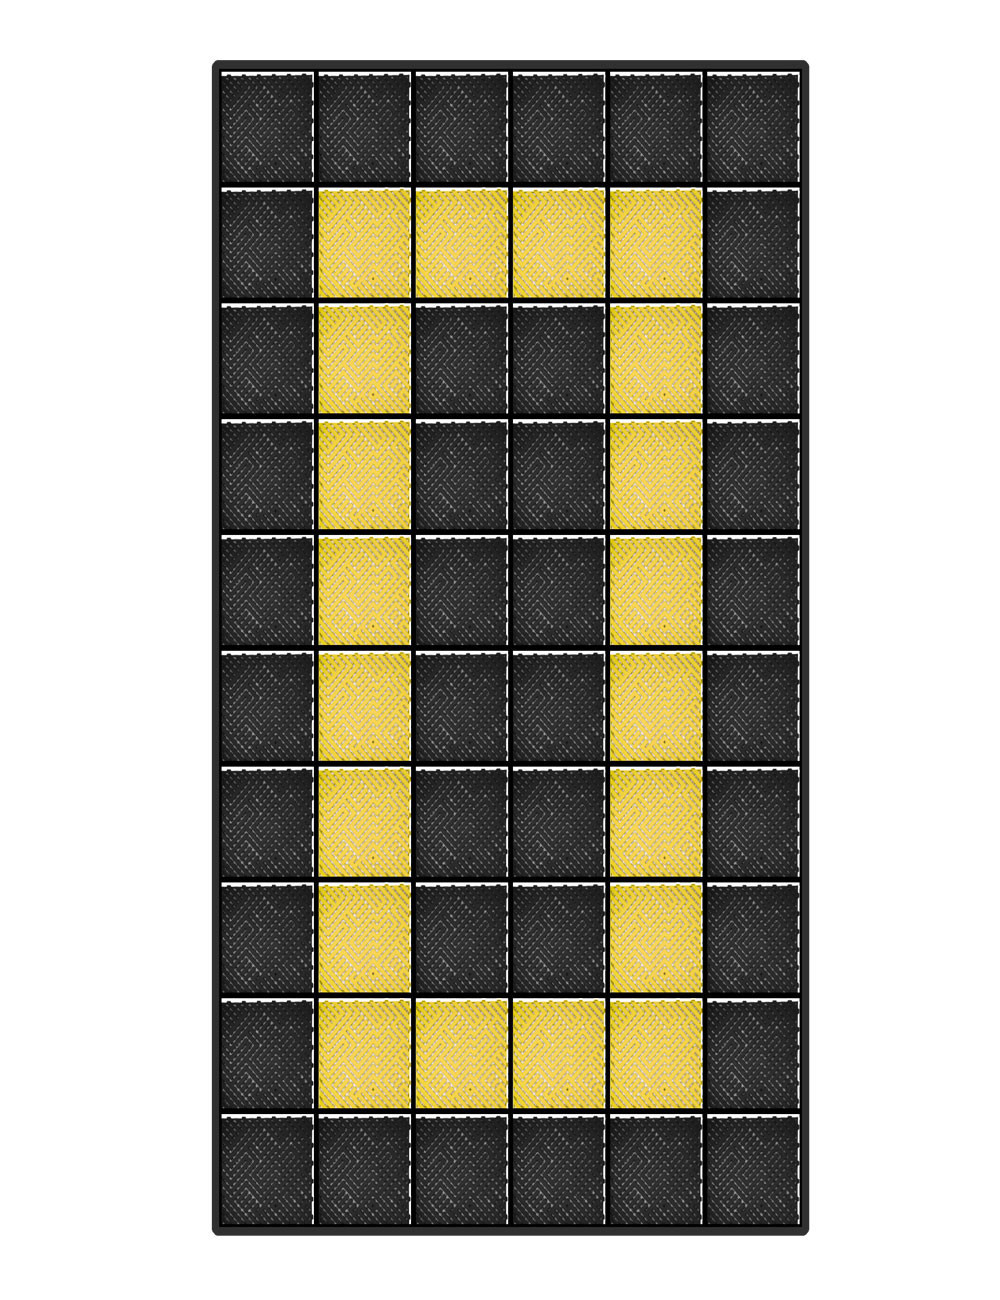 Kit dalles de sol motif racing pour garage - 15m² - 5 m x 3 m - Noir et jaune